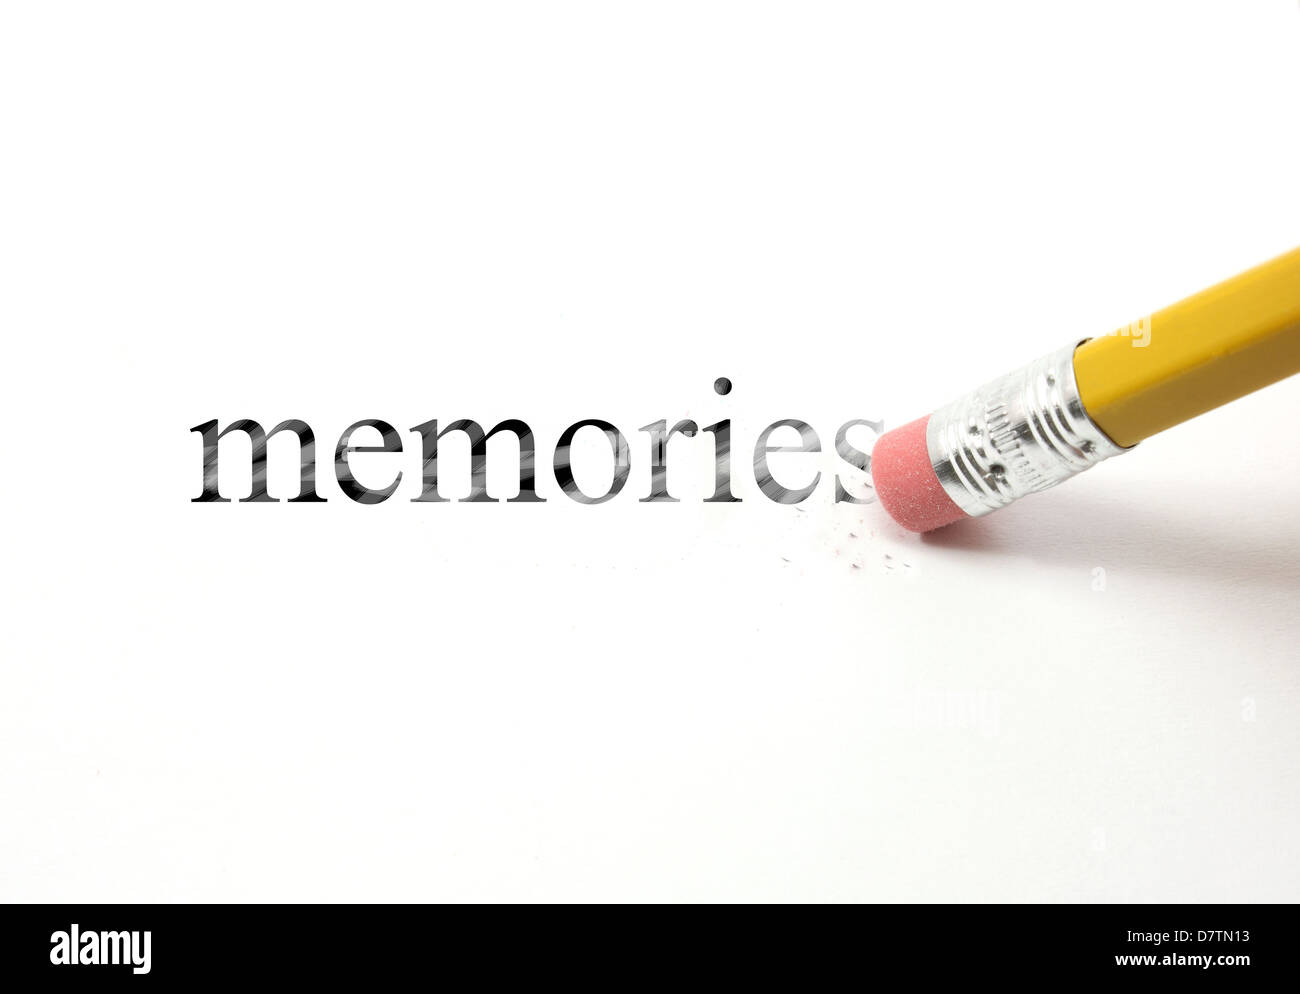 La parola memorie scritte con una matita su carta bianca. Una gomma da matita è di iniziare a cancellare la parola memorie. Foto Stock